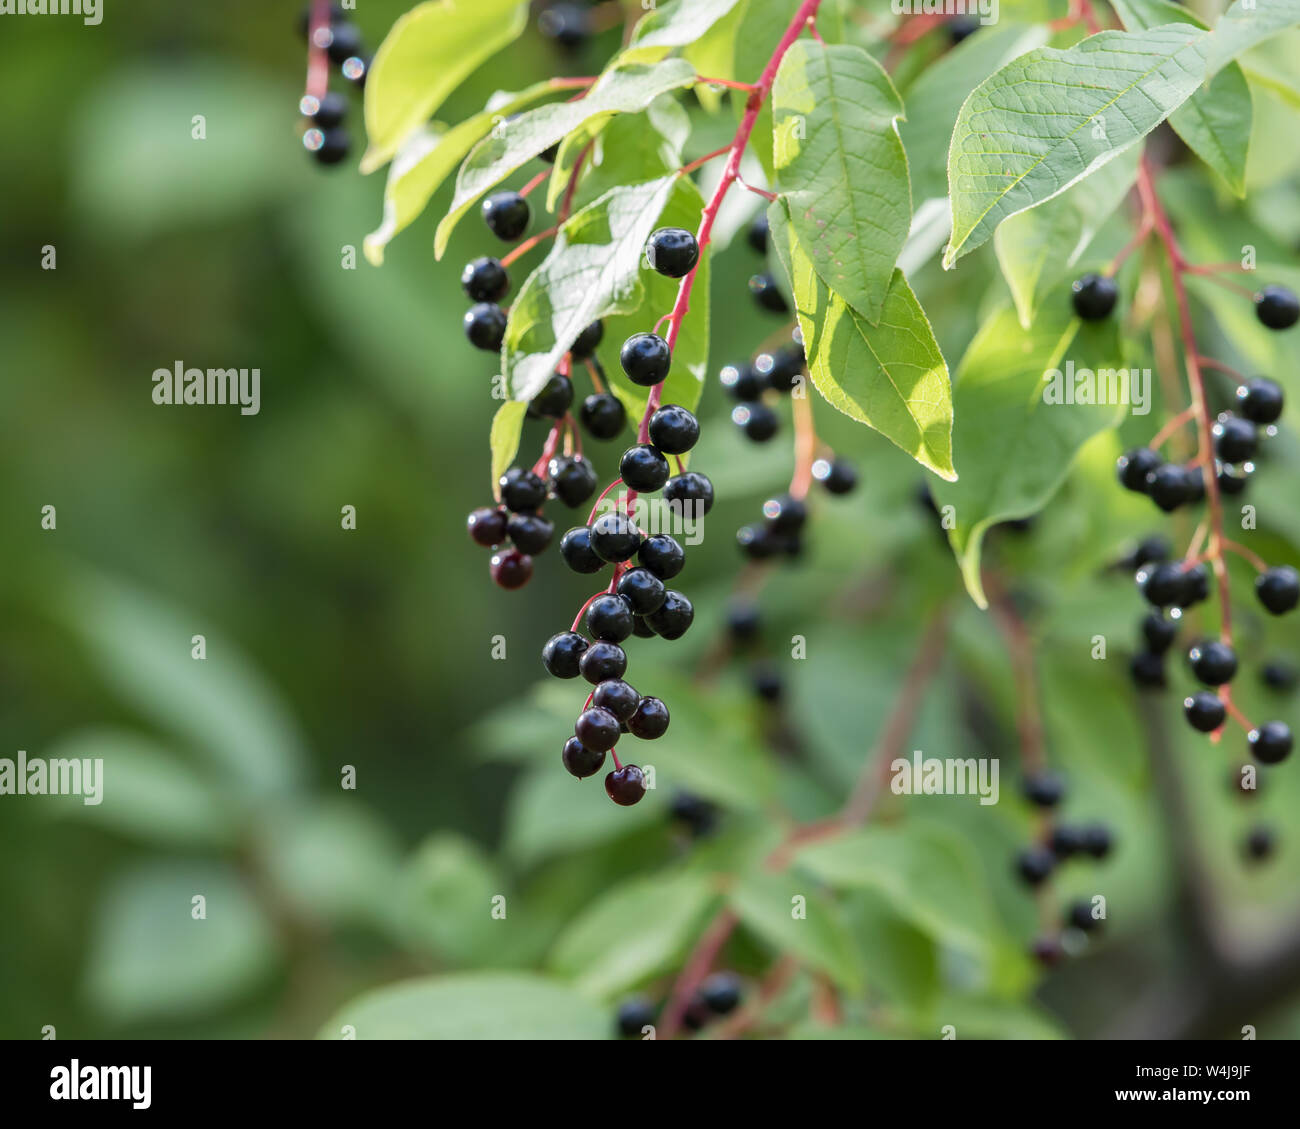 Autumn Berries on the Chokecherry Tree in Alaska Stock Photo - Alamy